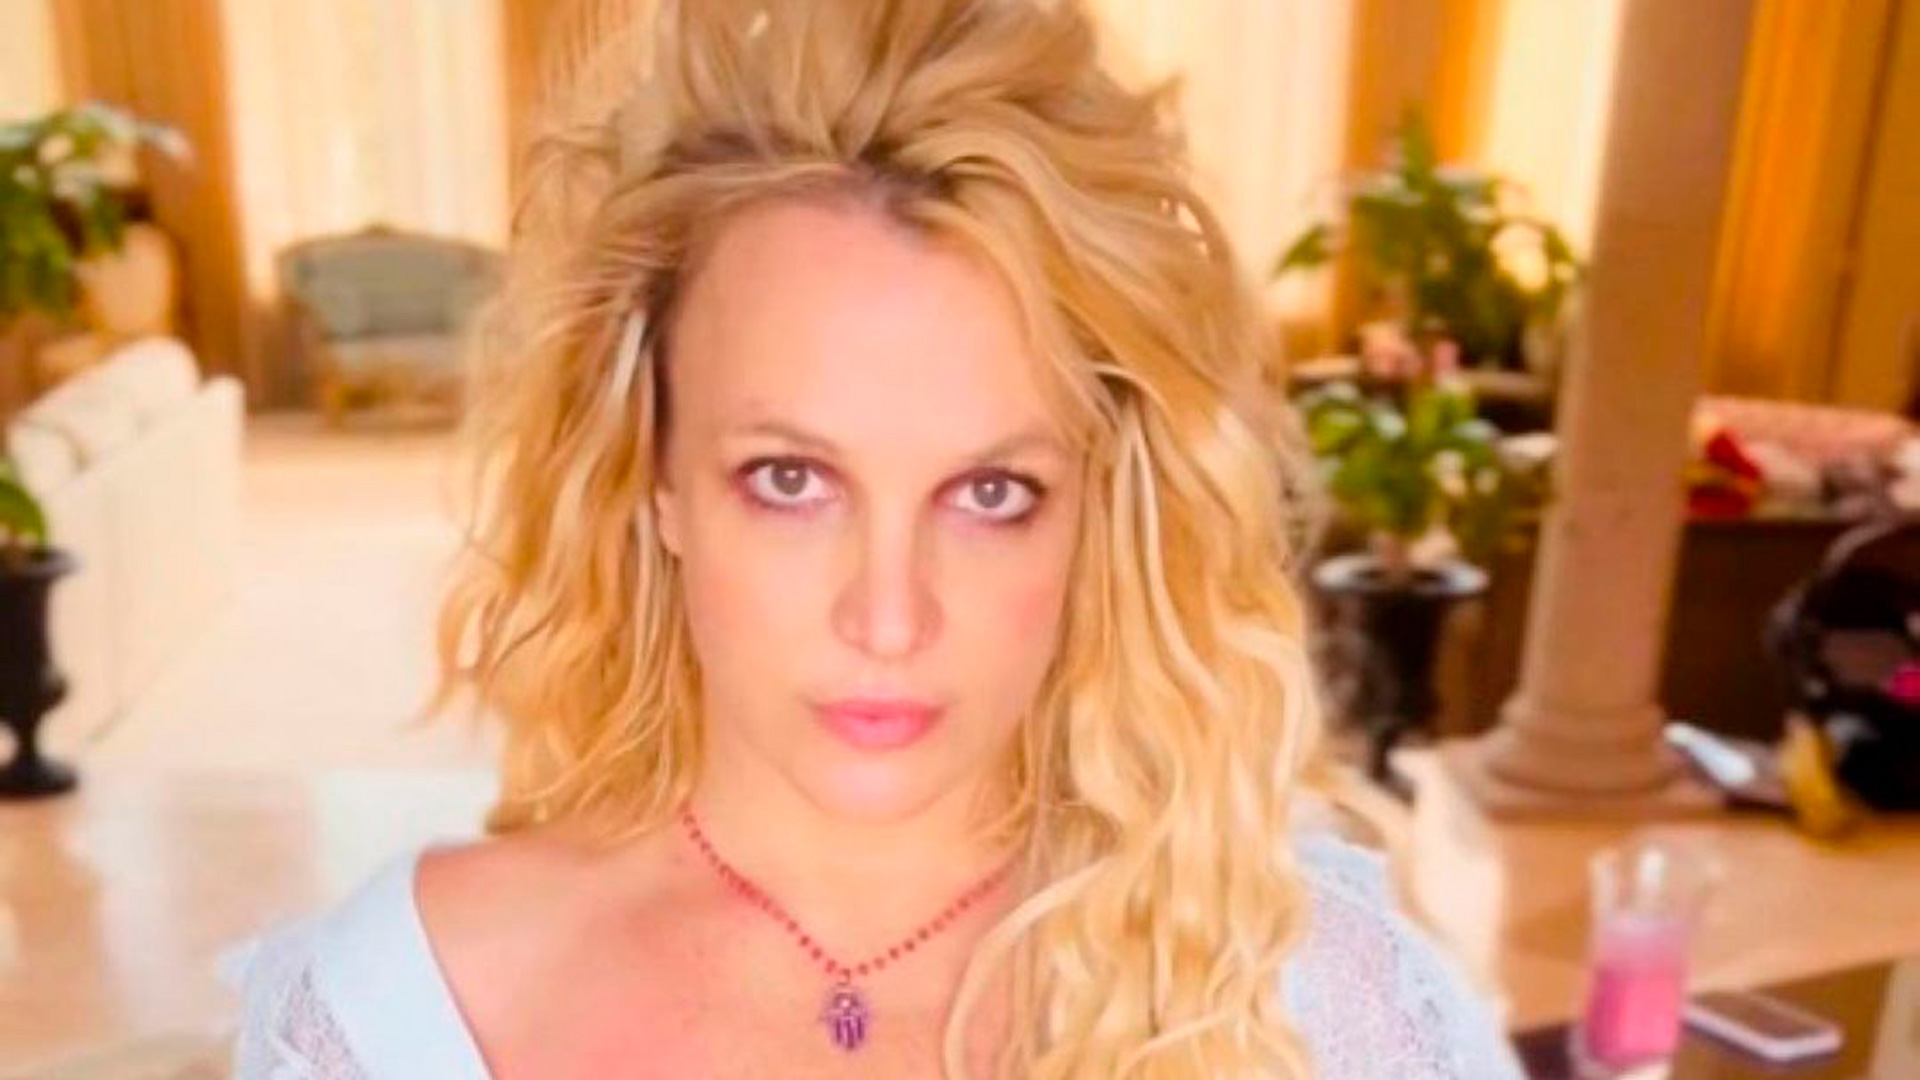 El padre de Britney ha asegurado que "él salvó su vida"
(@britneyspears)